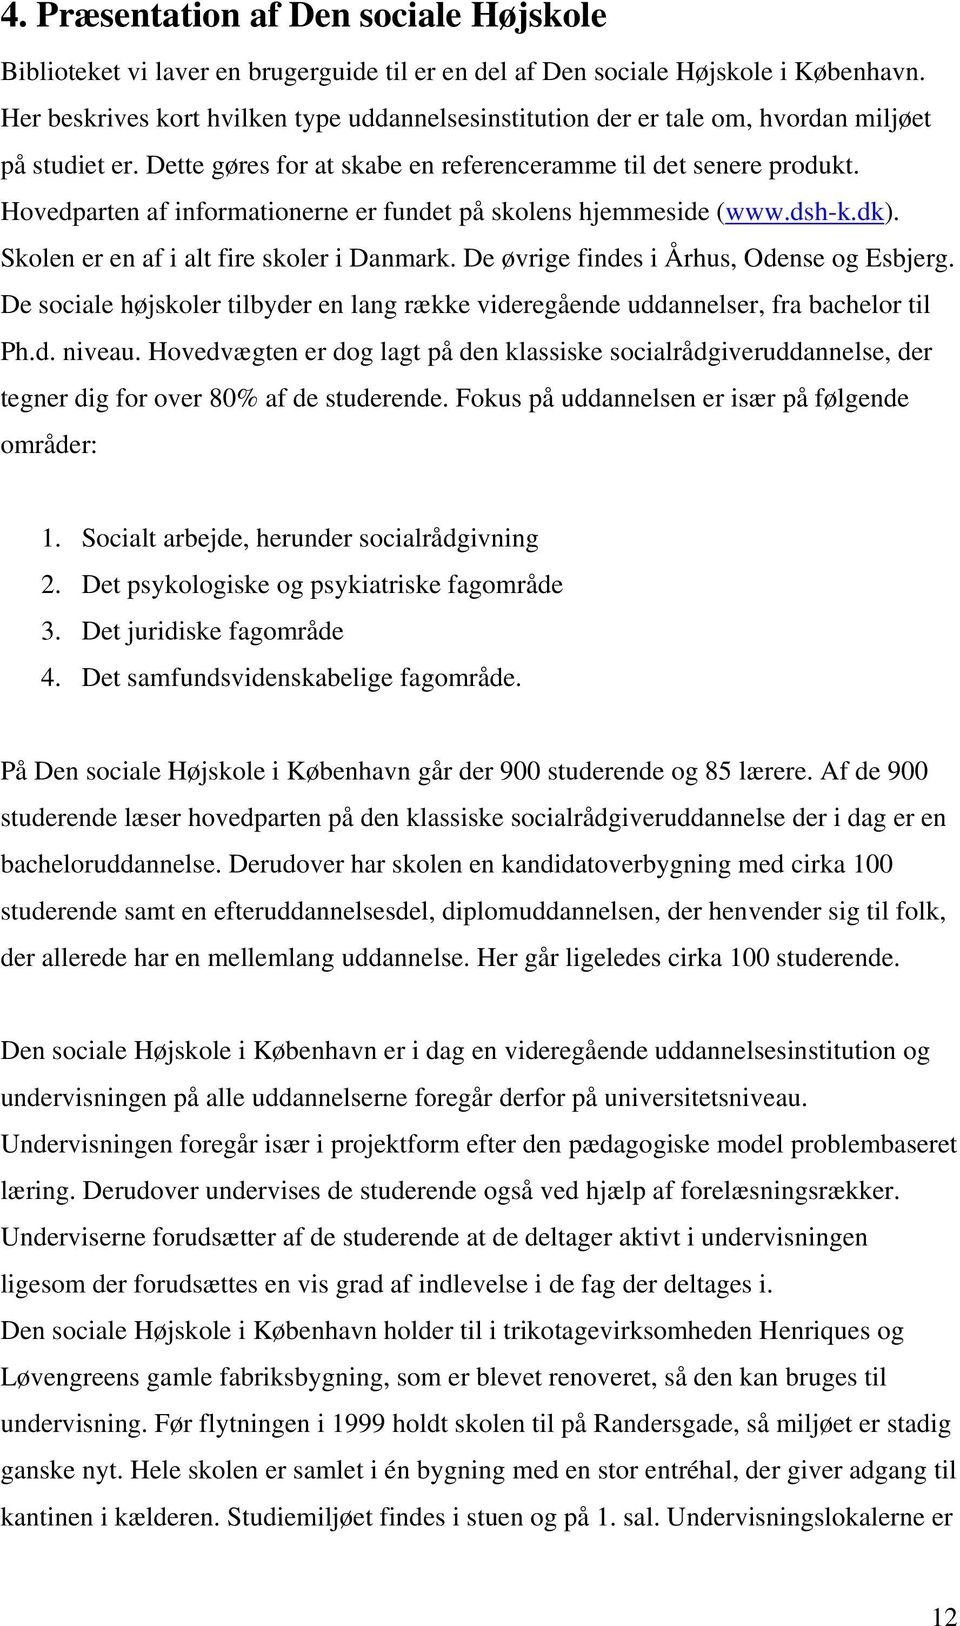 Hovedparten af informationerne er fundet på skolens hjemmeside (www.dsh-k.dk). Skolen er en af i alt fire skoler i Danmark. De øvrige findes i Århus, Odense og Esbjerg.